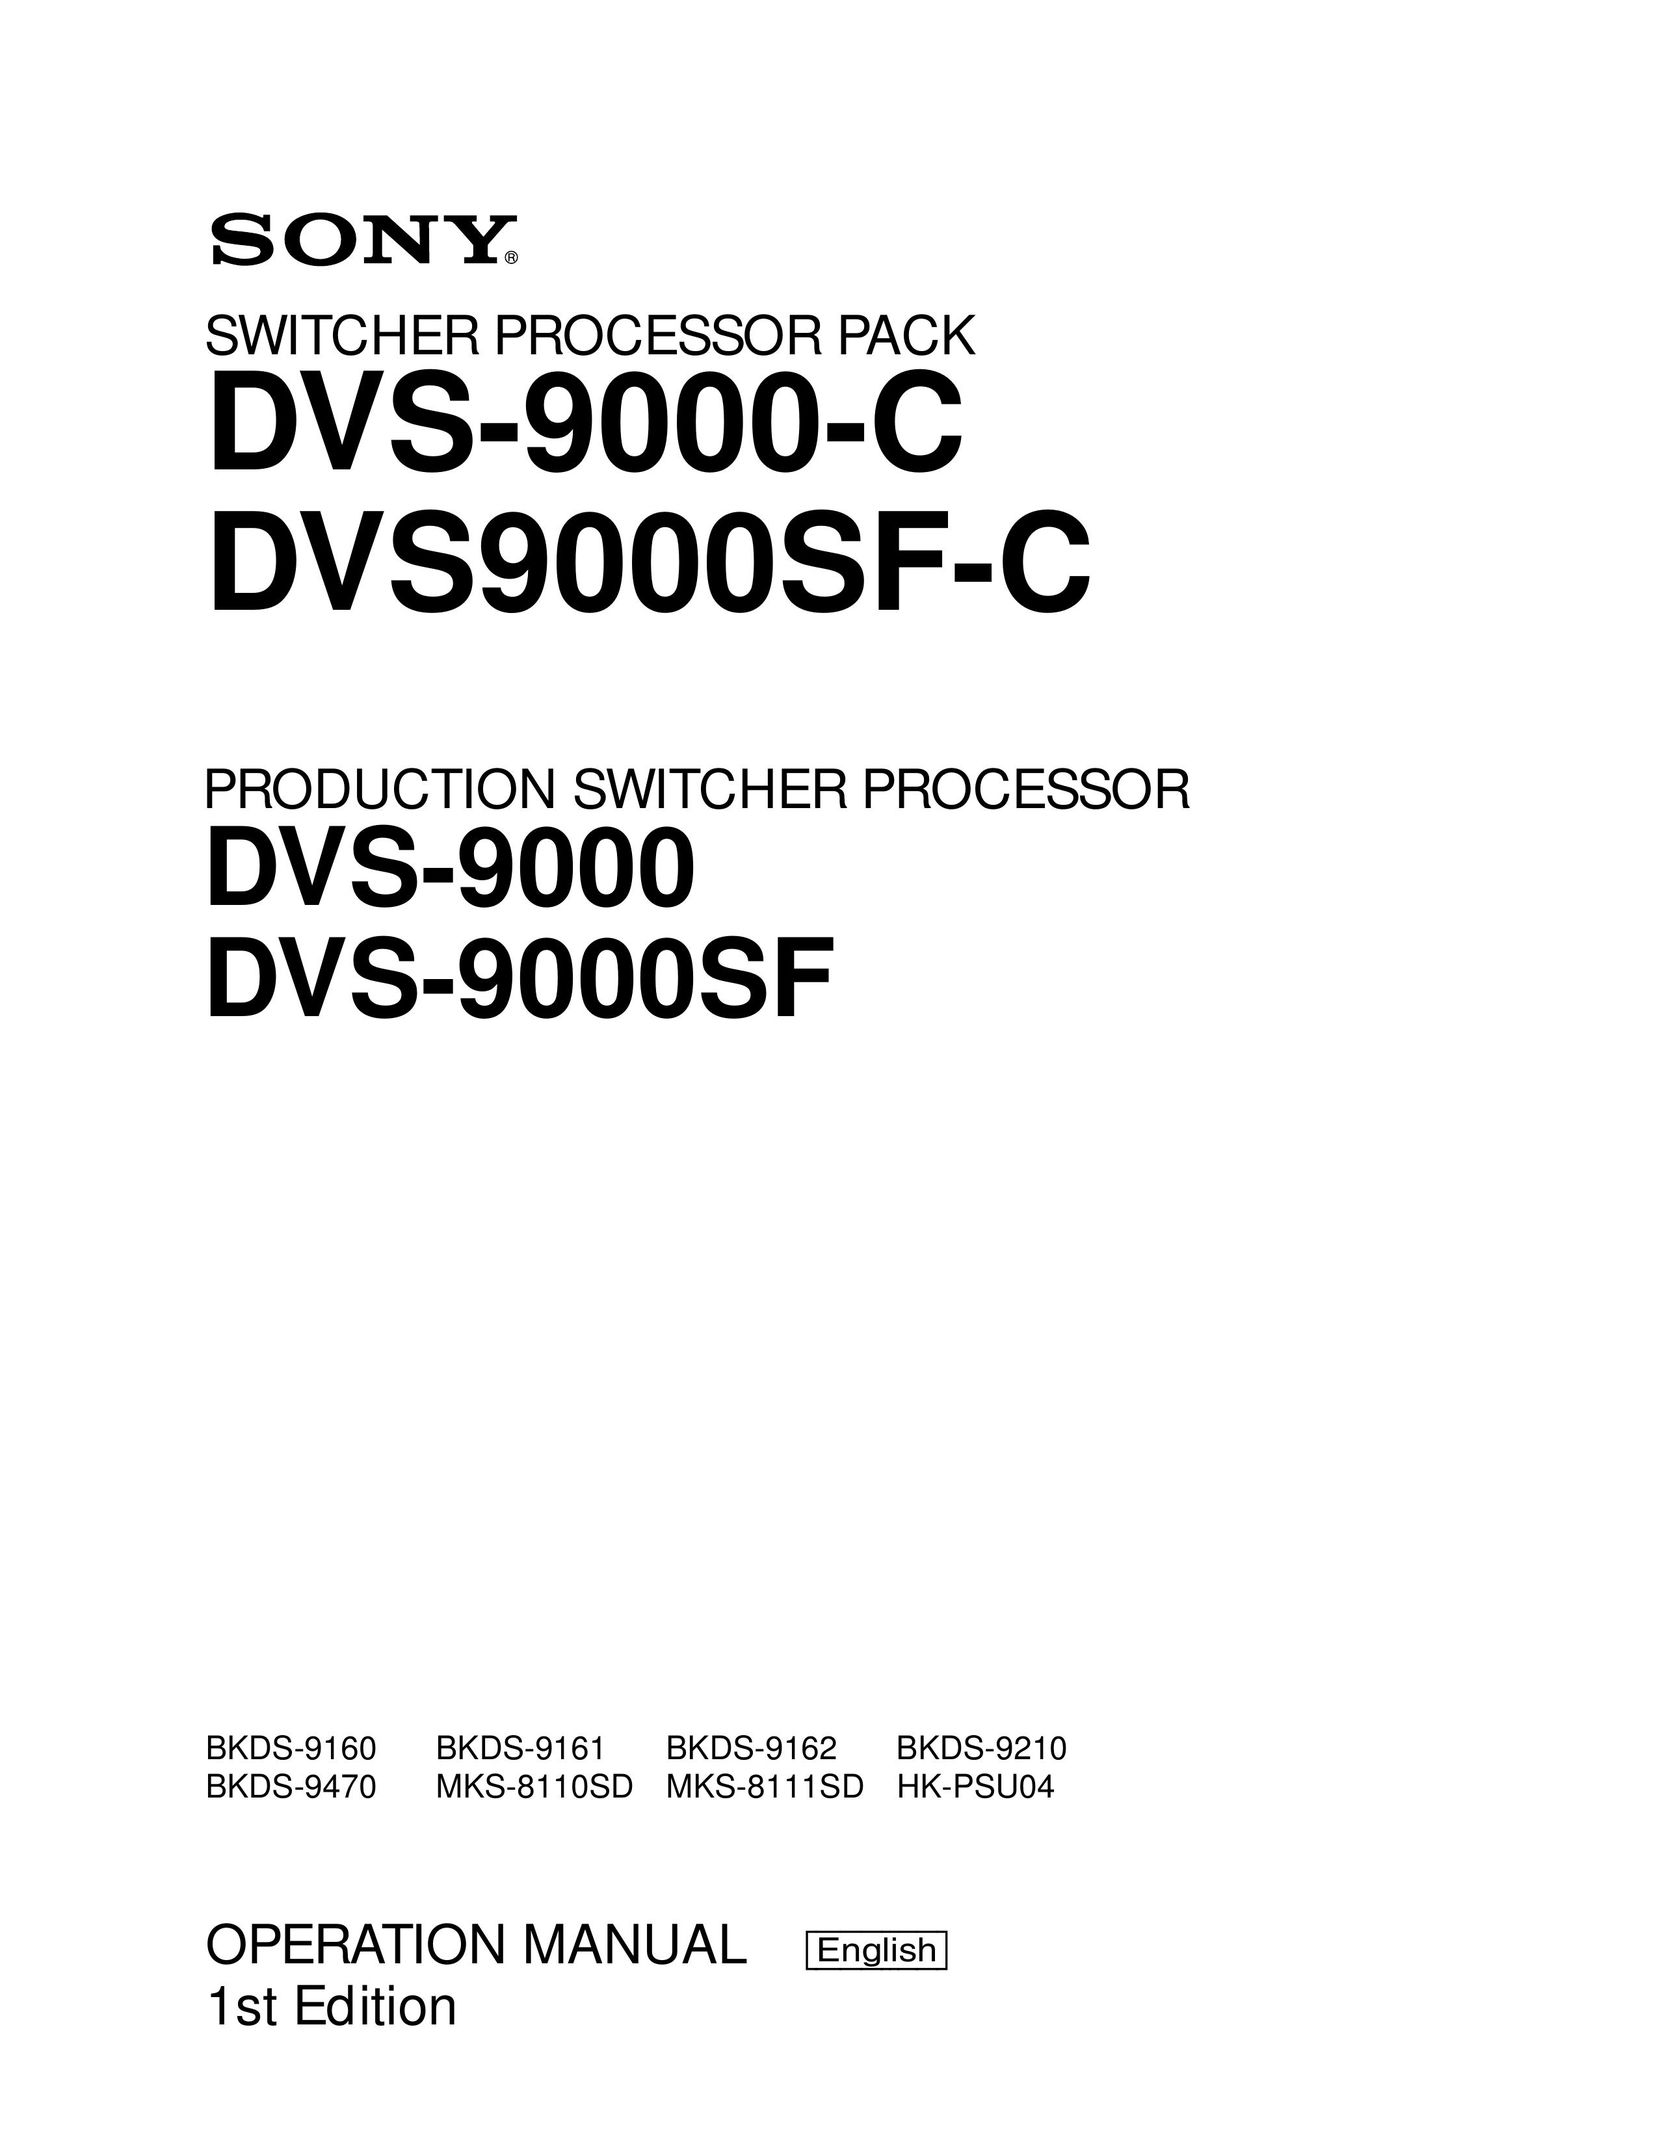 Sony DVS-9000-C Switch User Manual